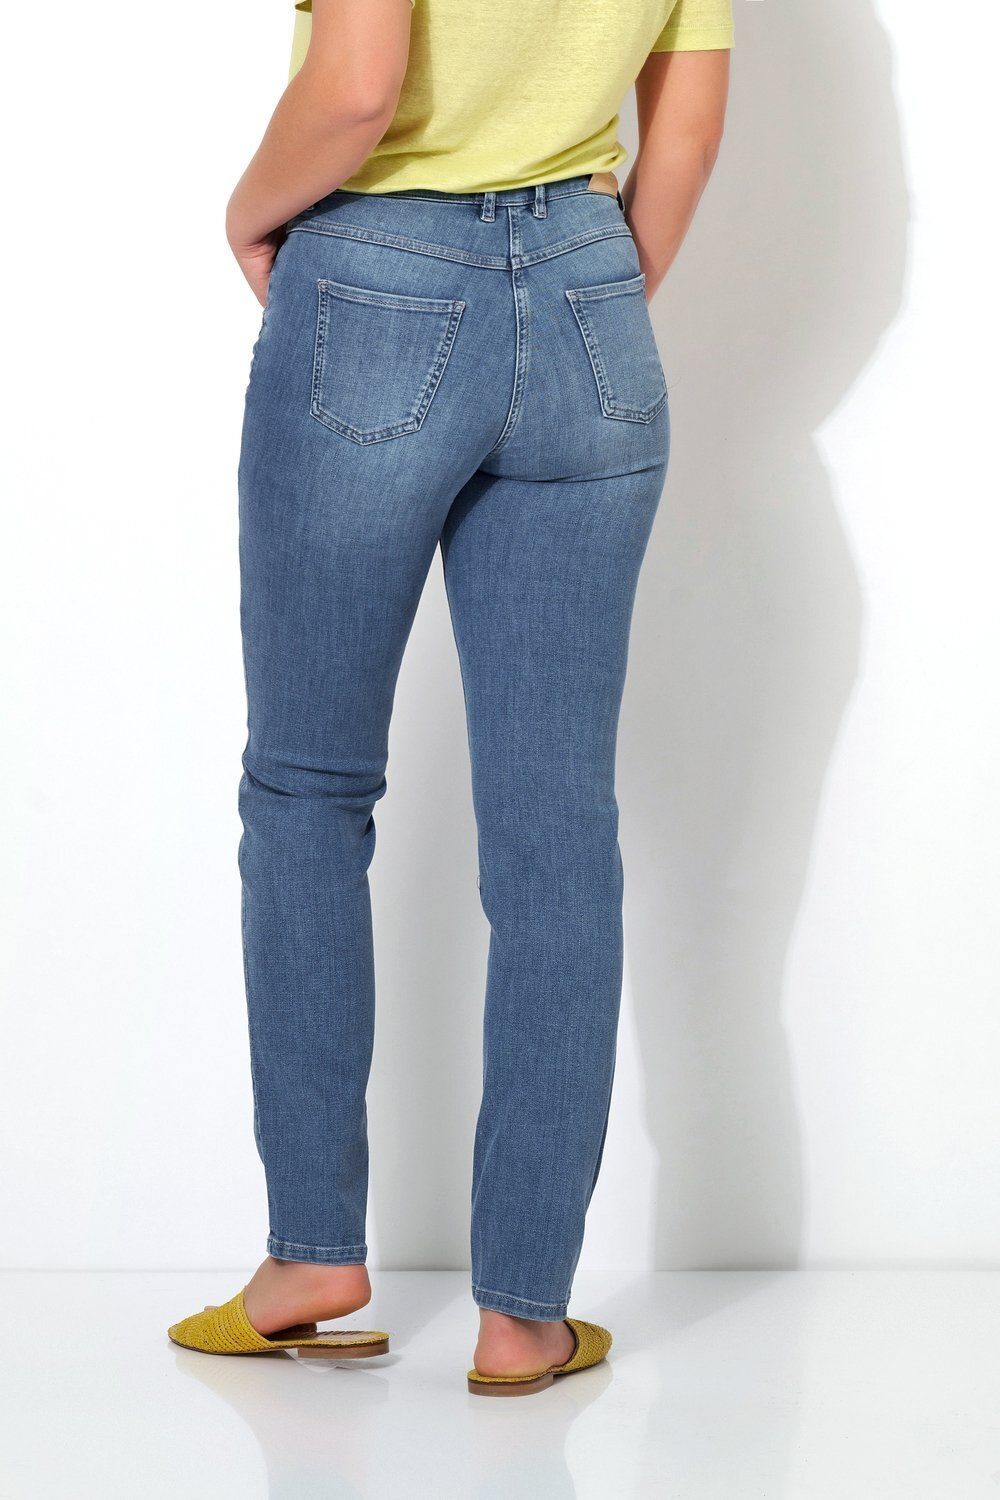 TONI Slim-fit-Jeans Hüftsattel 534 hellblau Shape vorne mit Perfect 